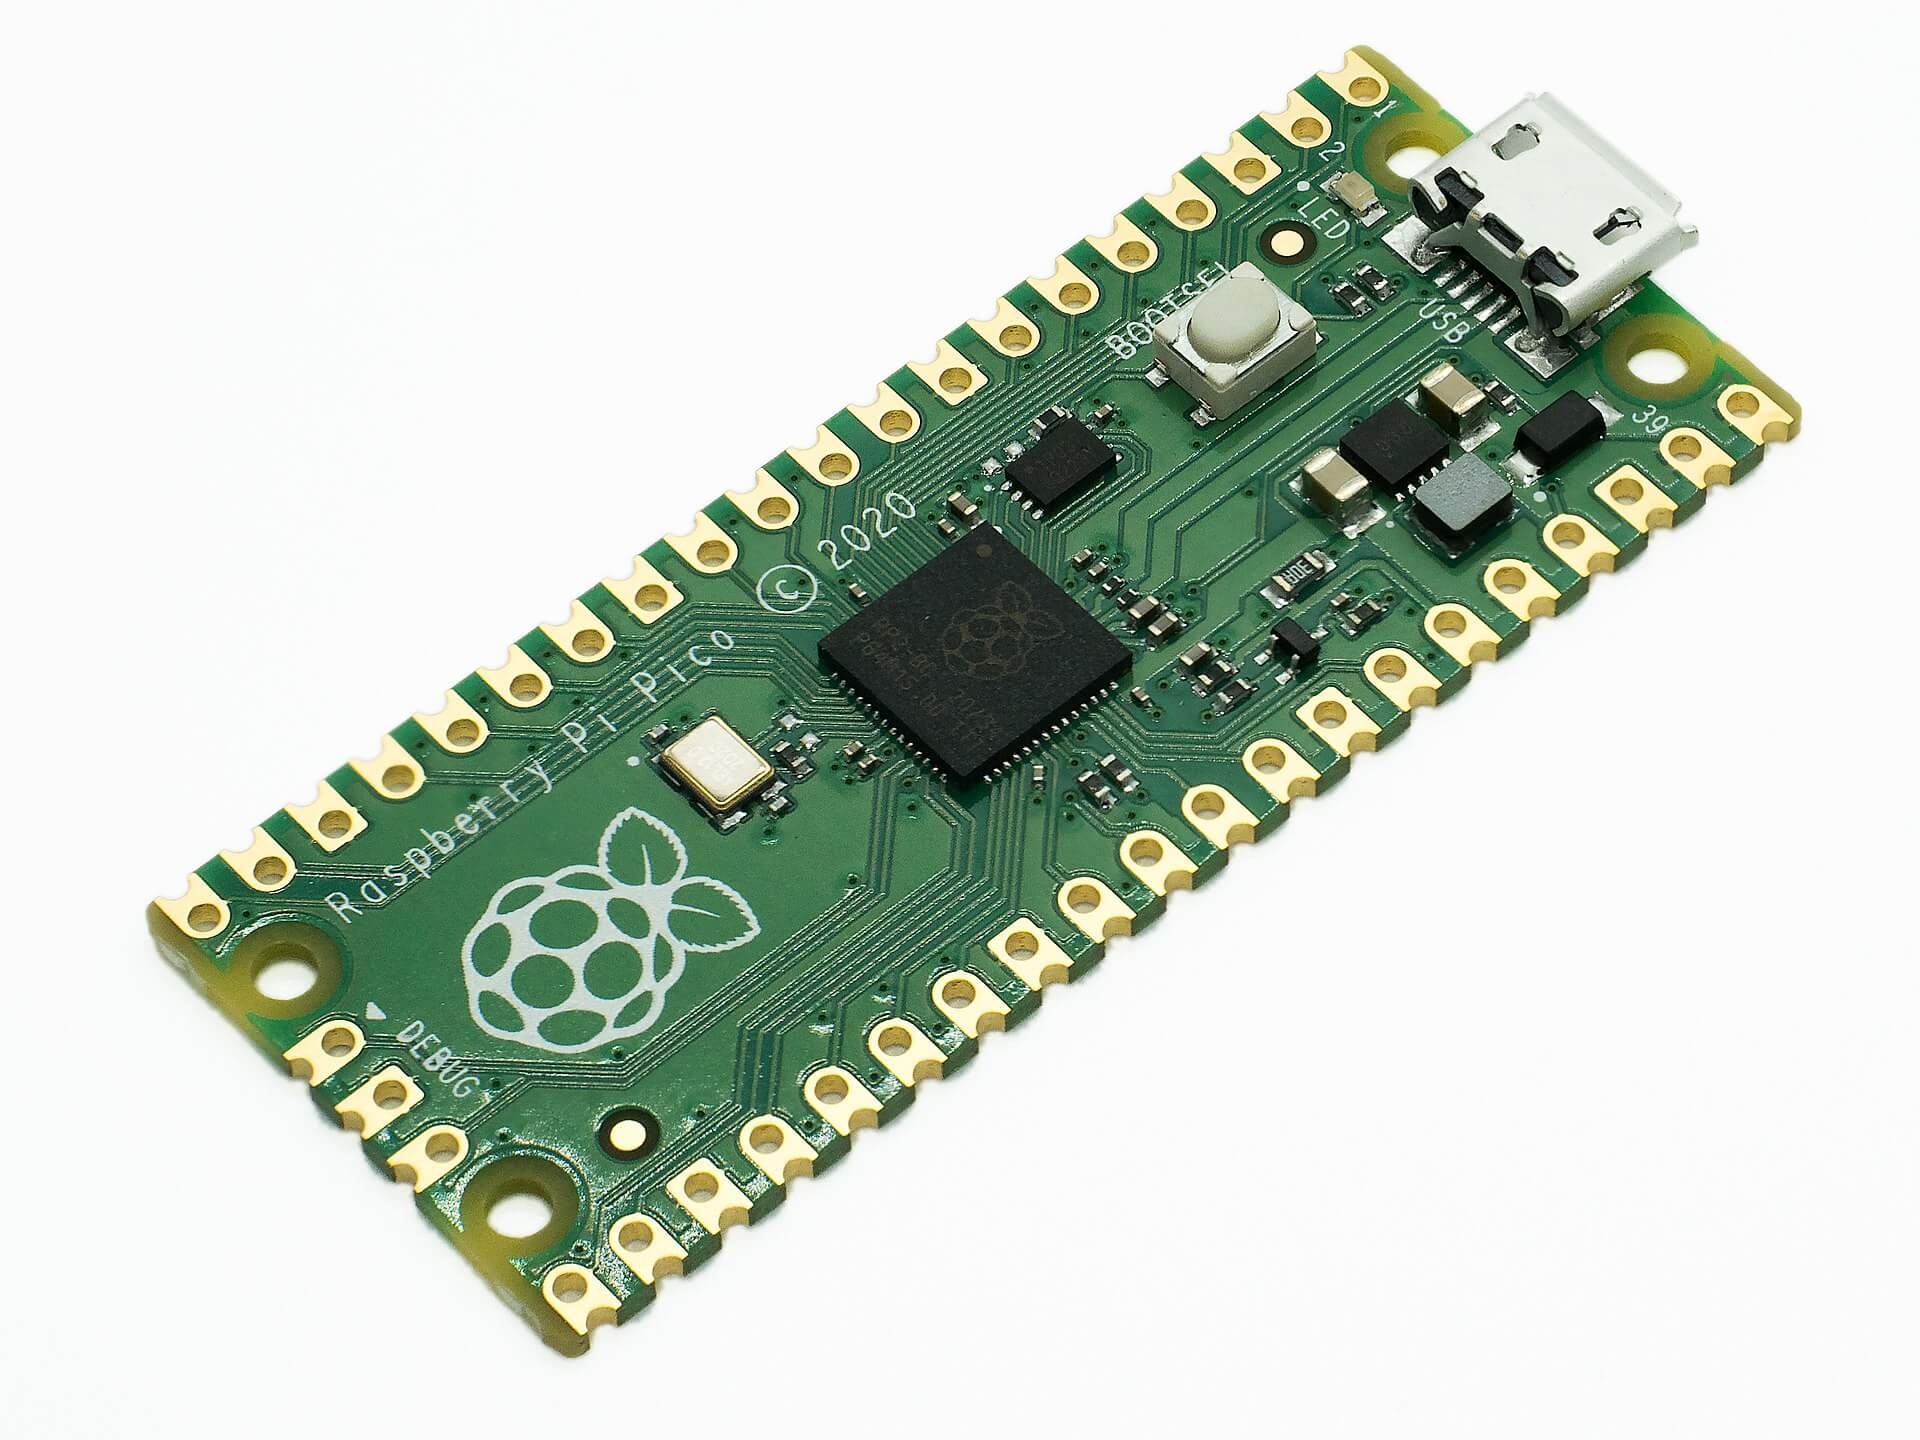 The Raspberry Pi Pico Microcontroller Board